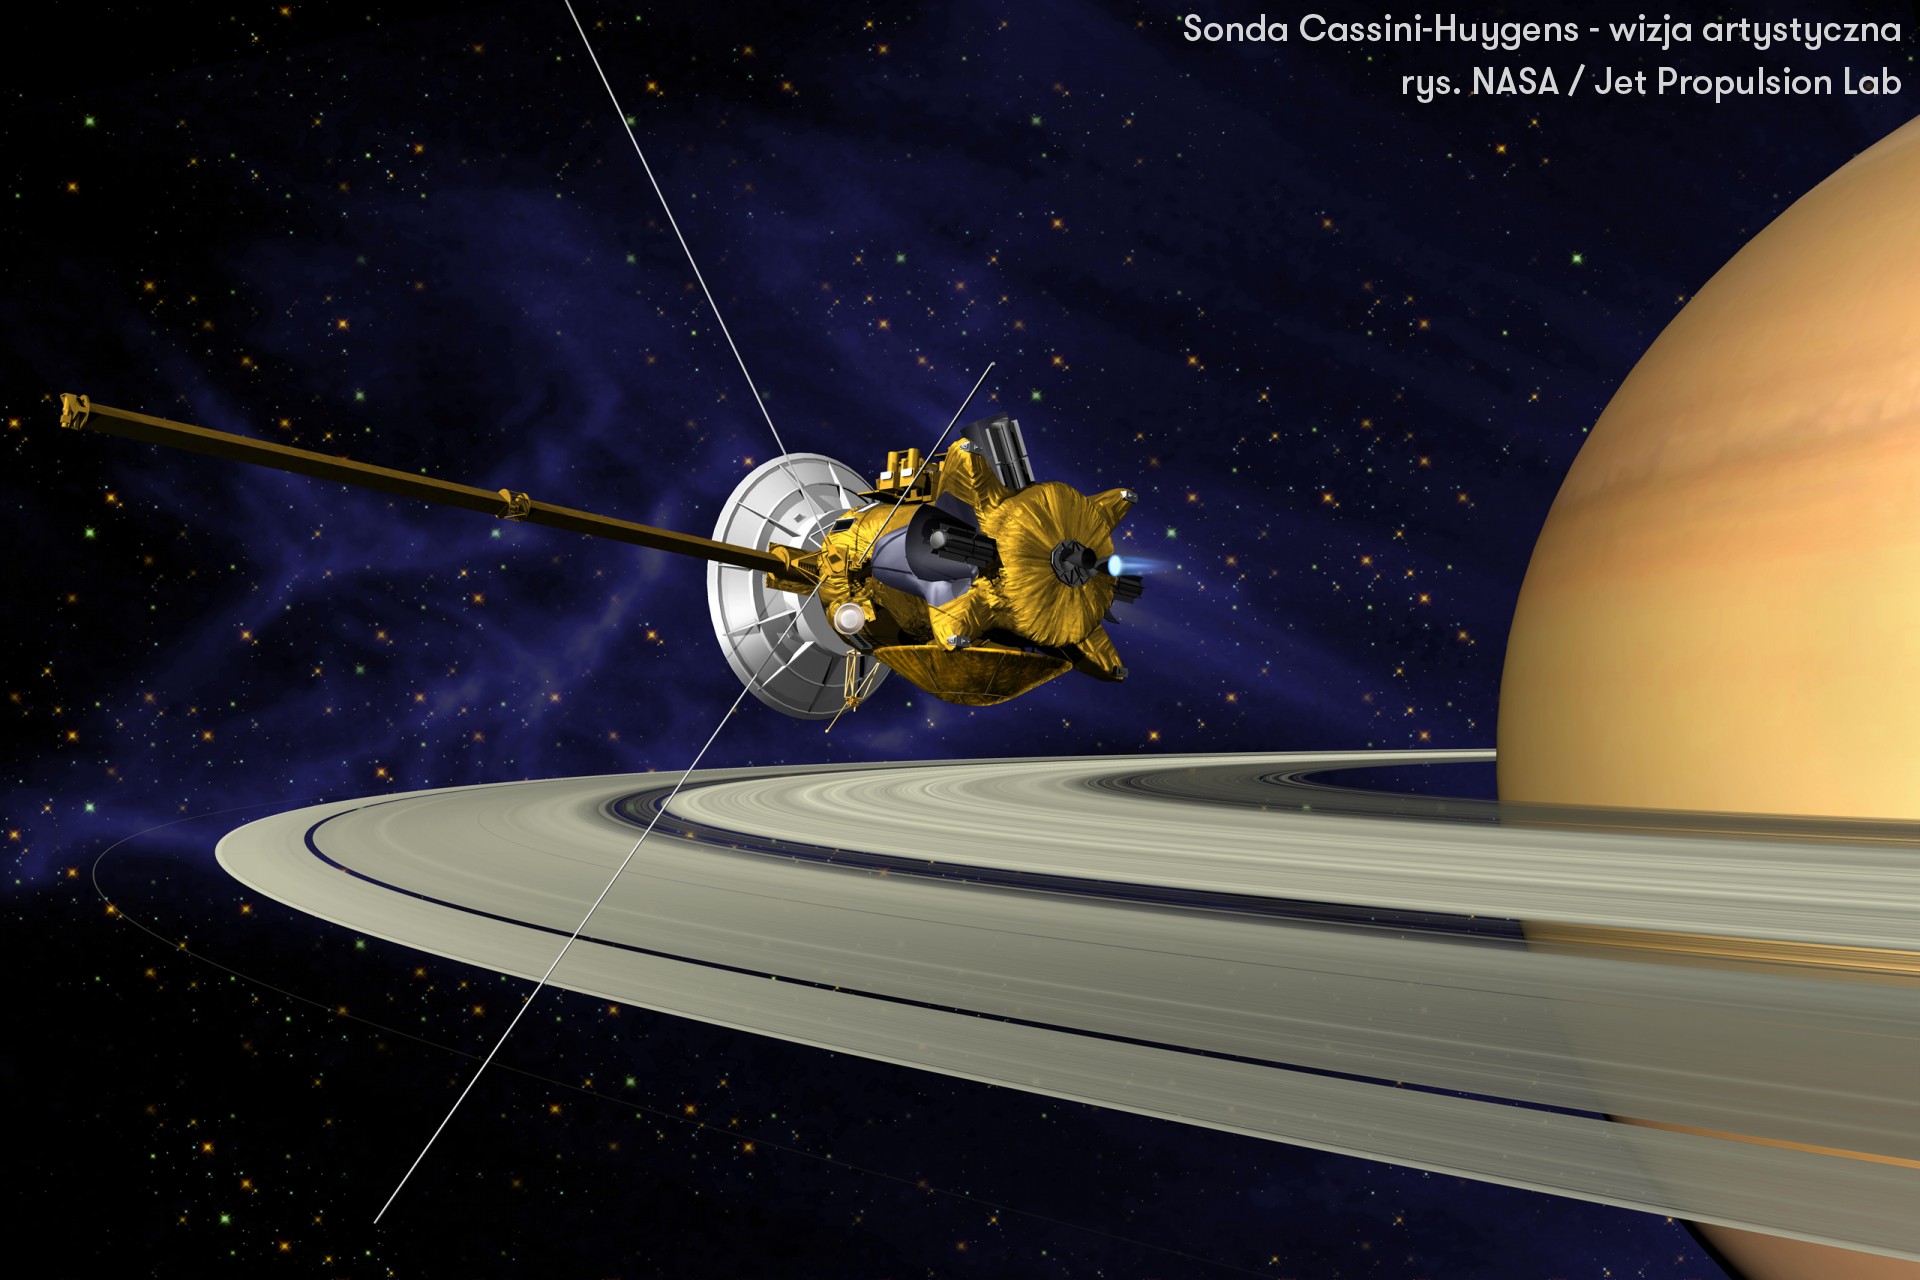 Sonda Cassini-Huygens